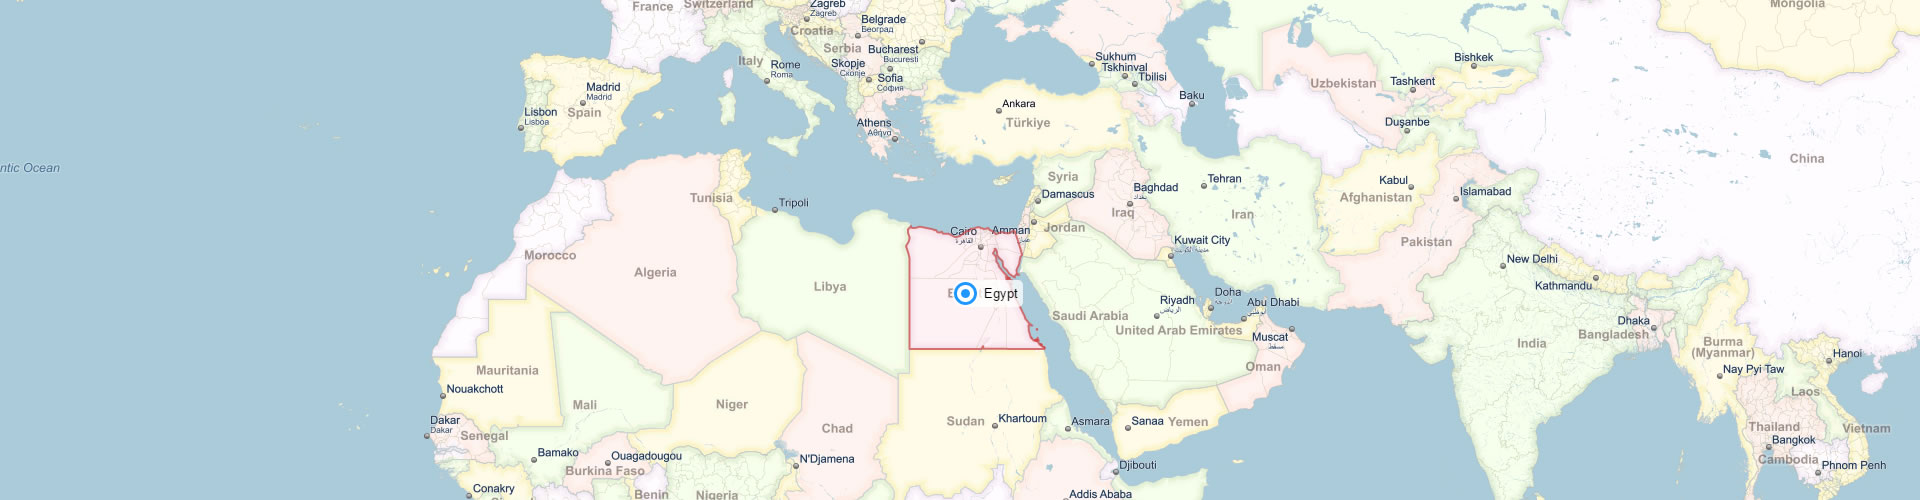 agypten land grenzen karte